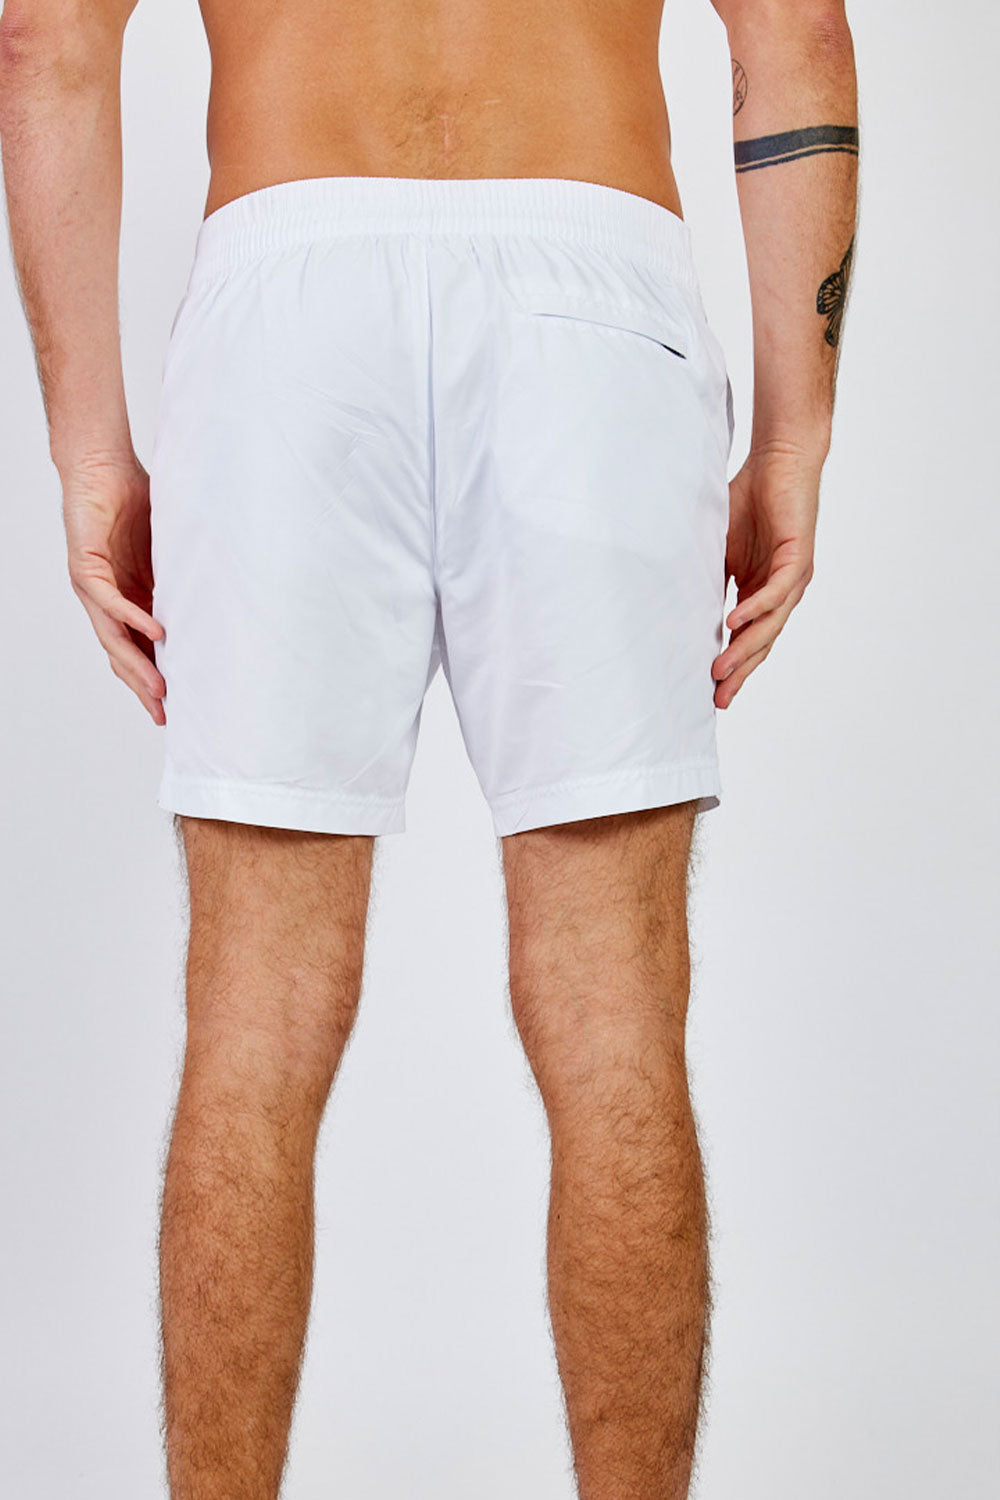 Replay מכנס בגד ים בצבע לבן לגברים-Replay-S-נאקו